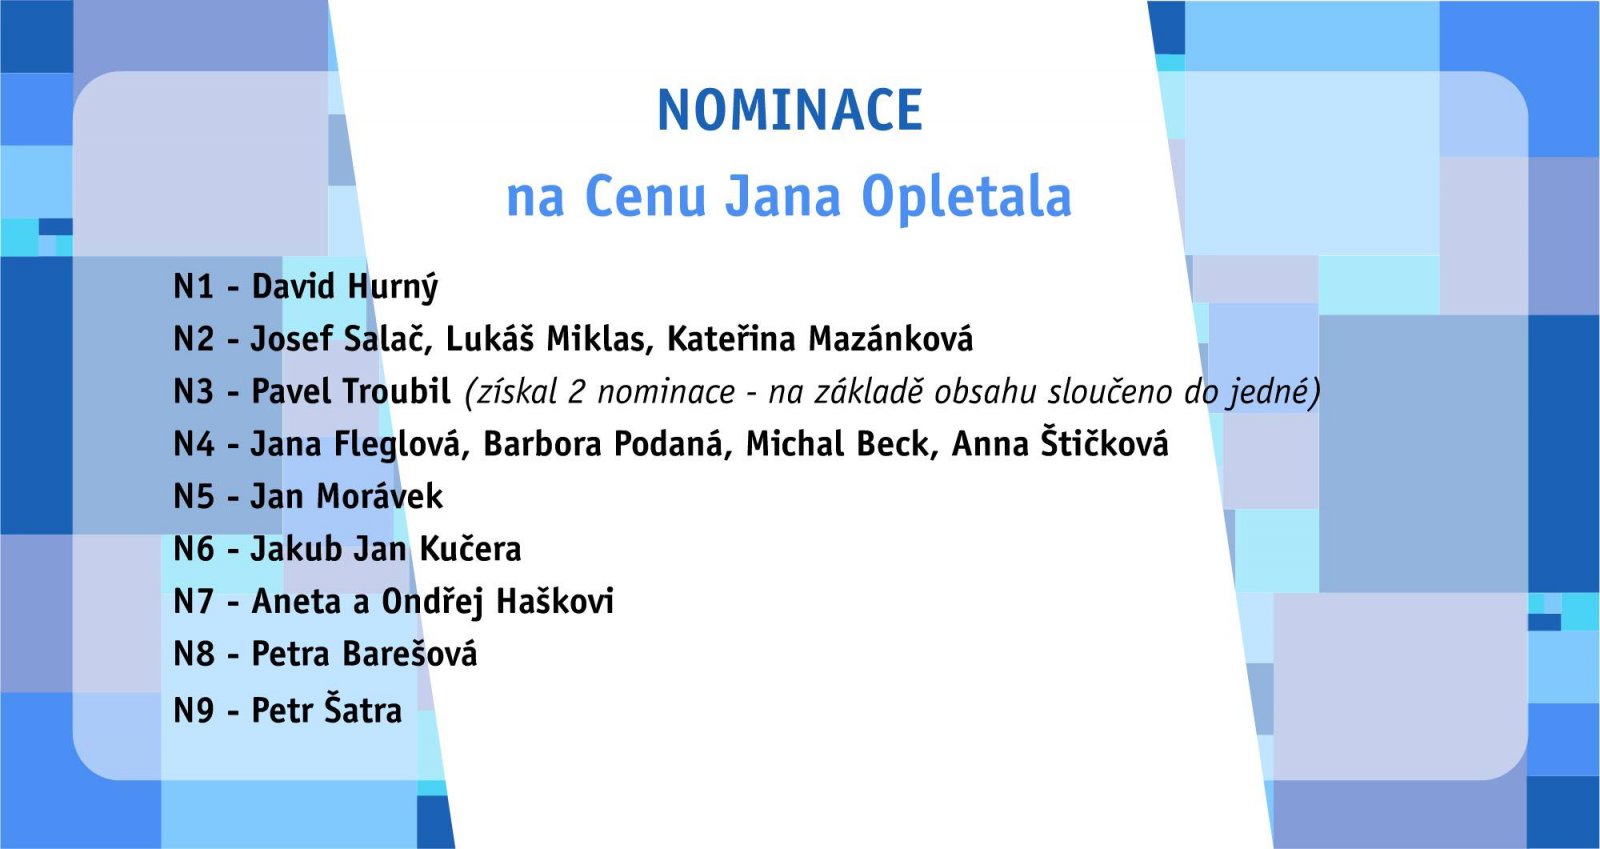 Nominace na cenu Jana Opletala